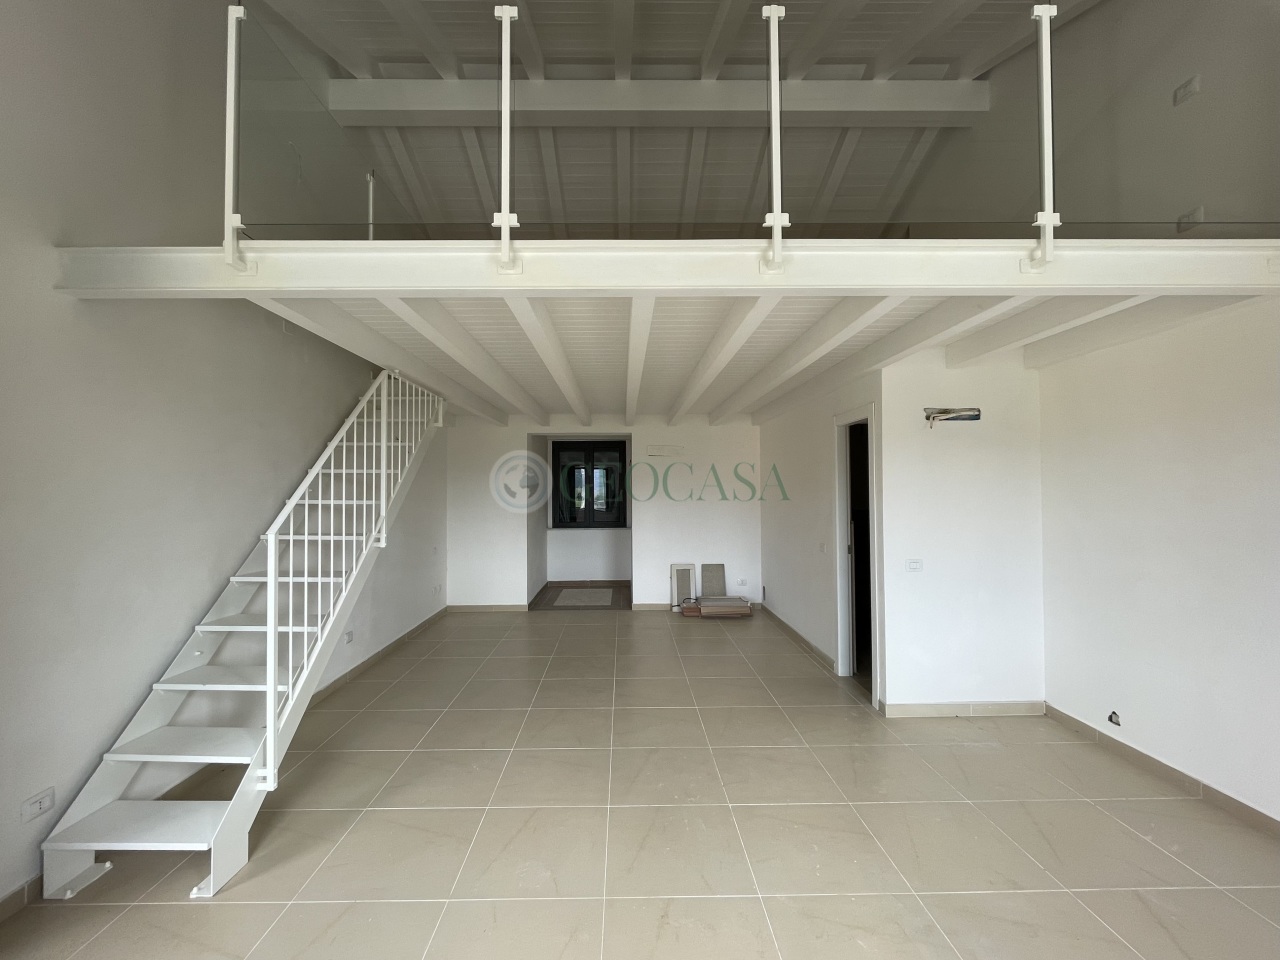 Appartamento in vendita a Sarzana, 2 locali, prezzo € 160.000 | PortaleAgenzieImmobiliari.it